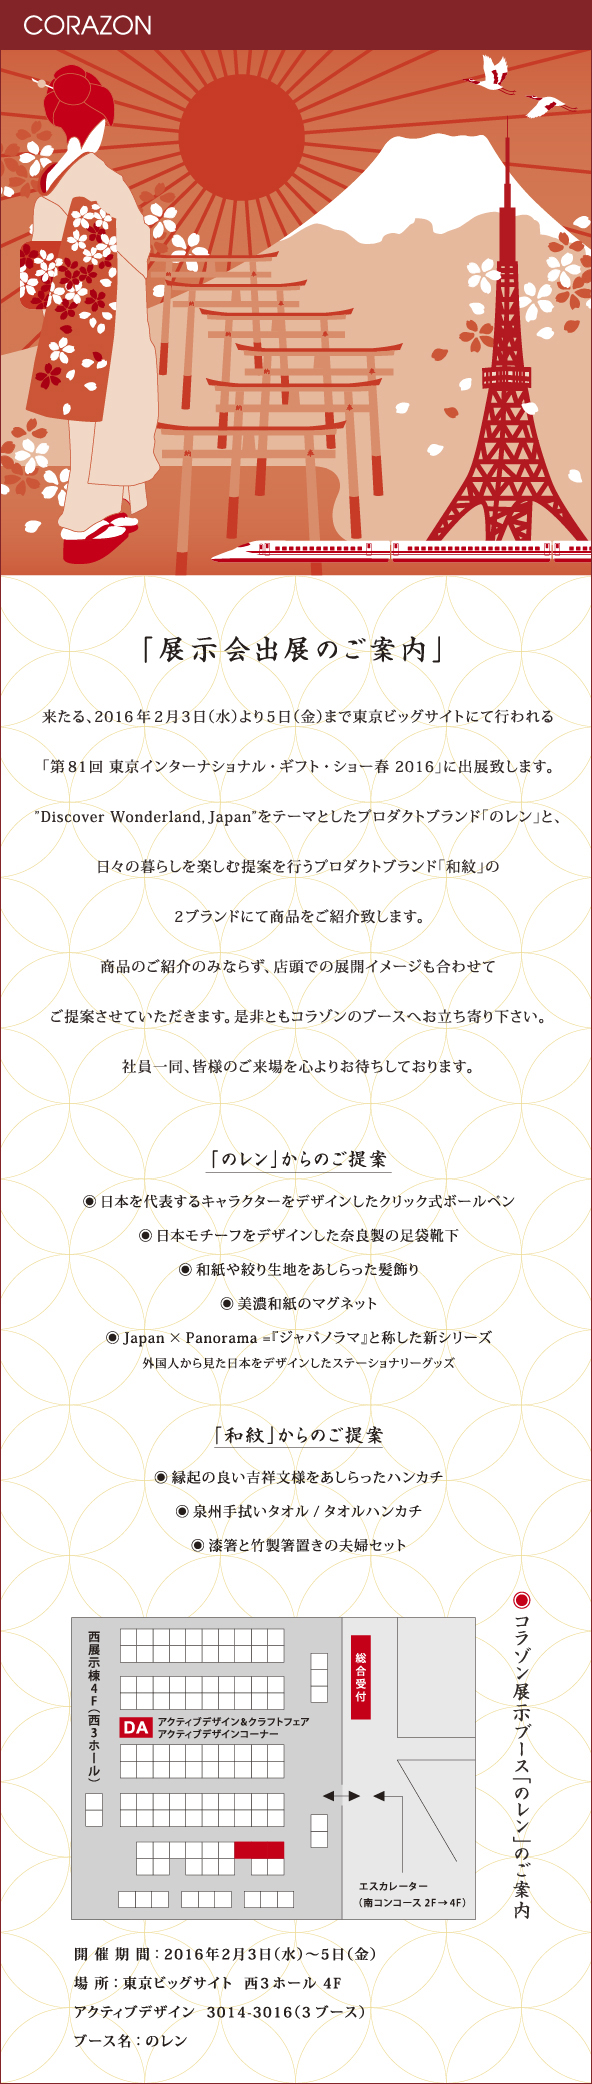 CORAZONメルマガ　20160126<br>

「展示会出展のご案内」<br>
来たる、2016年２月３日（水）より５日（金）まで東京ビッグサイトにて行われる<br>
「第81回 東京インターナショナル・ギフト・ショー春 2016」に出展致します。<br>
”Discover Wonderland, Japan”をテーマとしたプロダクトブランド「のレン」と、<br>
日々の暮らしを楽しむ提案を行うプロダクトブランド「和紋」の<br>
２ブランドにて商品をご紹介致します。<br>
商品のご紹介のみならず、店頭での展開イメージも合わせて<br>
ご提案させていただきます。是非ともコラゾンのブースへお立ち寄り下さい。<br>
社員一同、皆様のご来場を心よりお待ちしております。<br>


<br>
「のレン」からのご提案<br>
●日本を代表するキャラクターをデザインしたクリック式ボールペン<br>
●日本モチーフをデザインした奈良製の足袋靴下<br>
●和紙や絞り生地をあしらった髪飾り<br>
●美濃和紙のマグネット<br>
●Japan×Panorama＝『ジャパノラマ』と称した新シリーズ<br>
外国人から見た日本をデザインしたステーショナリーグッズ<br>
「和紋」からのご提案<br>
●縁起の良い吉祥文様をあしらったハンカチ<br>
●泉州手ぬぐいタオル／タオルハンカチ<br>
●漆箸と竹製箸置きの夫婦セット<br>
<br>
開催期間：2016年2月3日（水）〜5日（金）<br>
場所：東京ビッグサイト　西3ホール 4F<br>
アクティブデザイン 3014-3016（３ブース）<br>
ブース名：のレン<br>
<br>
